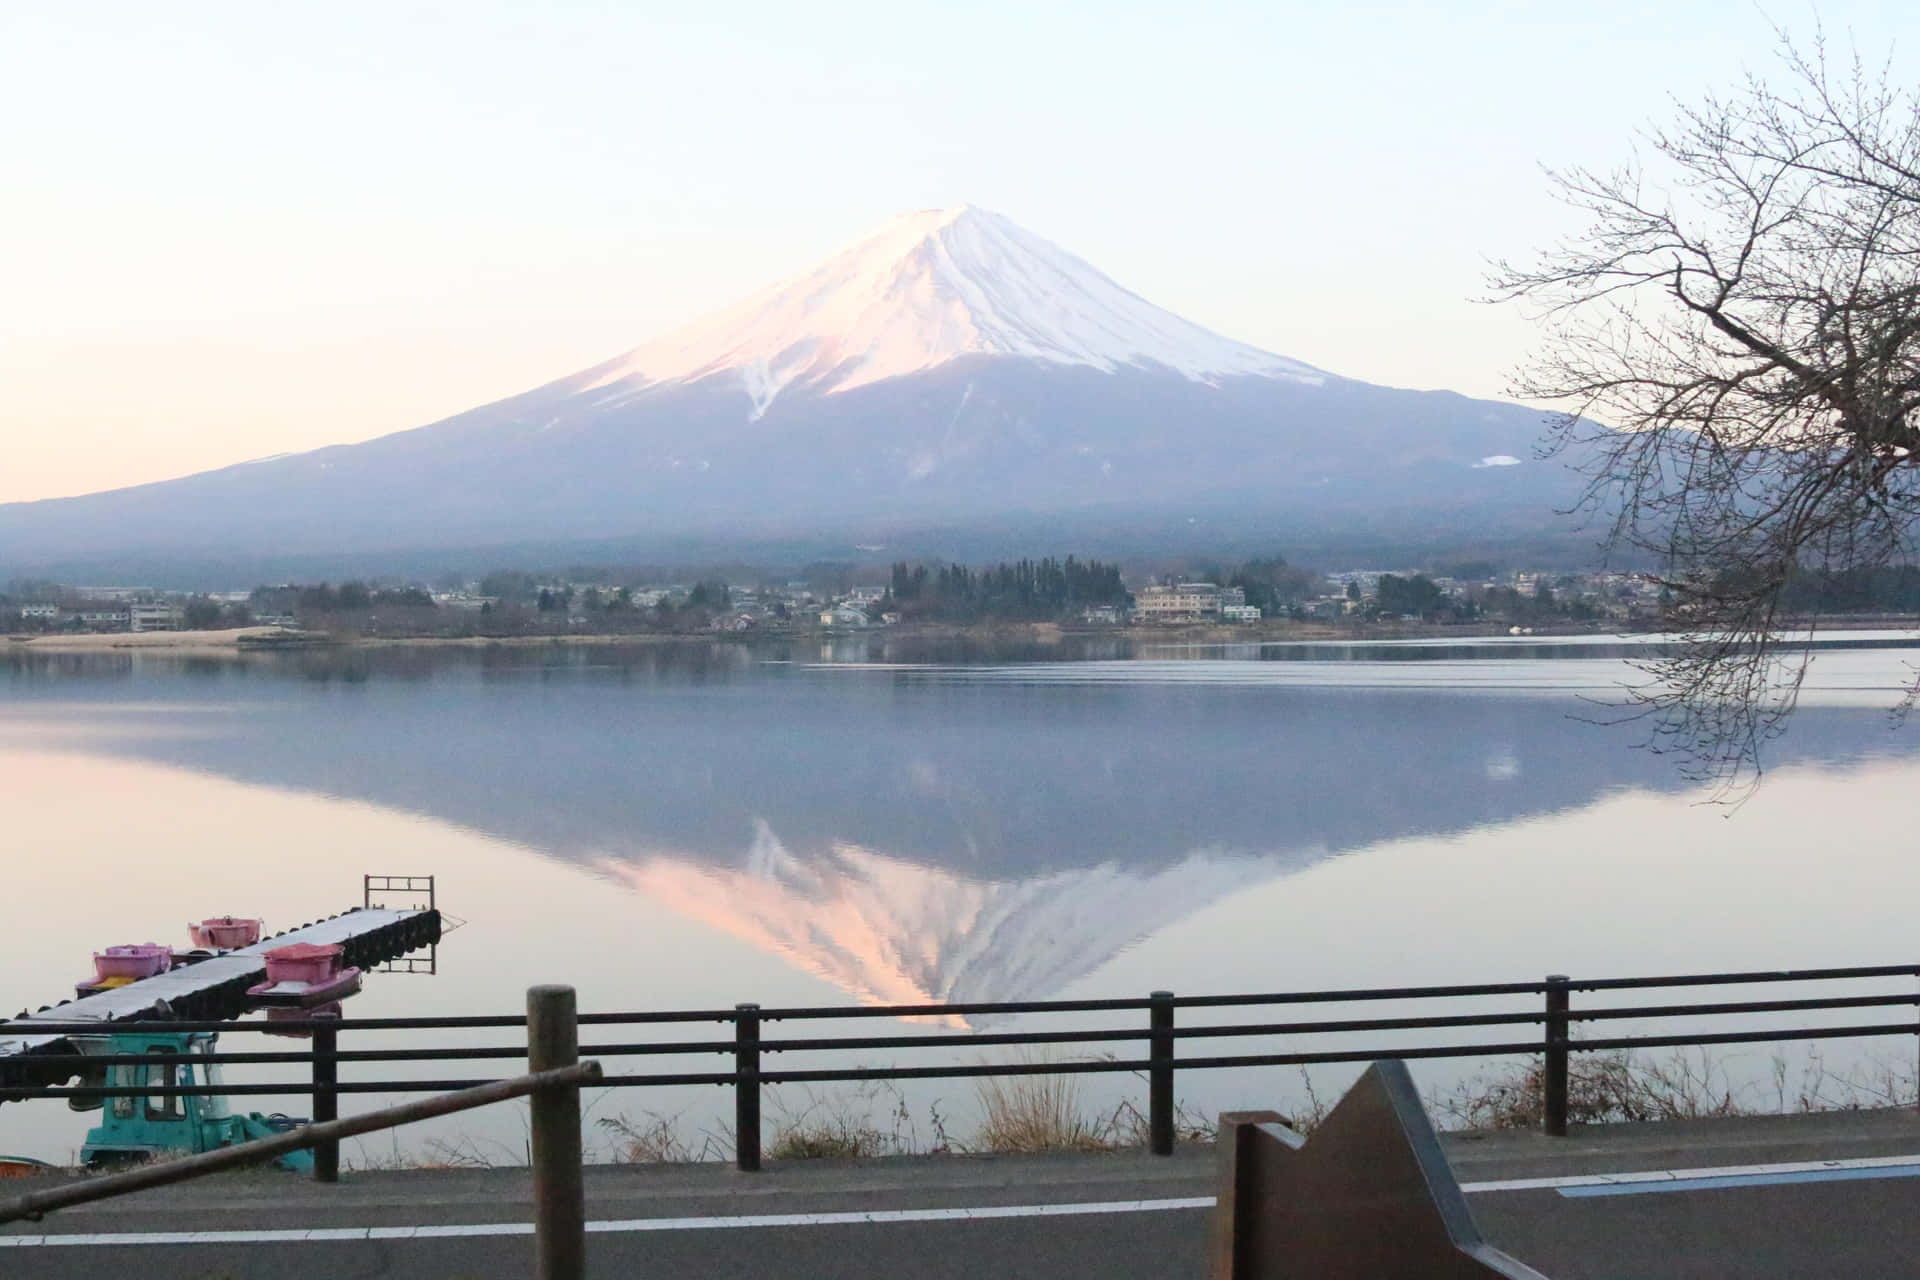 Detmäktiga Berget Mt Fuji Reser Sig Högt Över Ett Marinblått Hav.